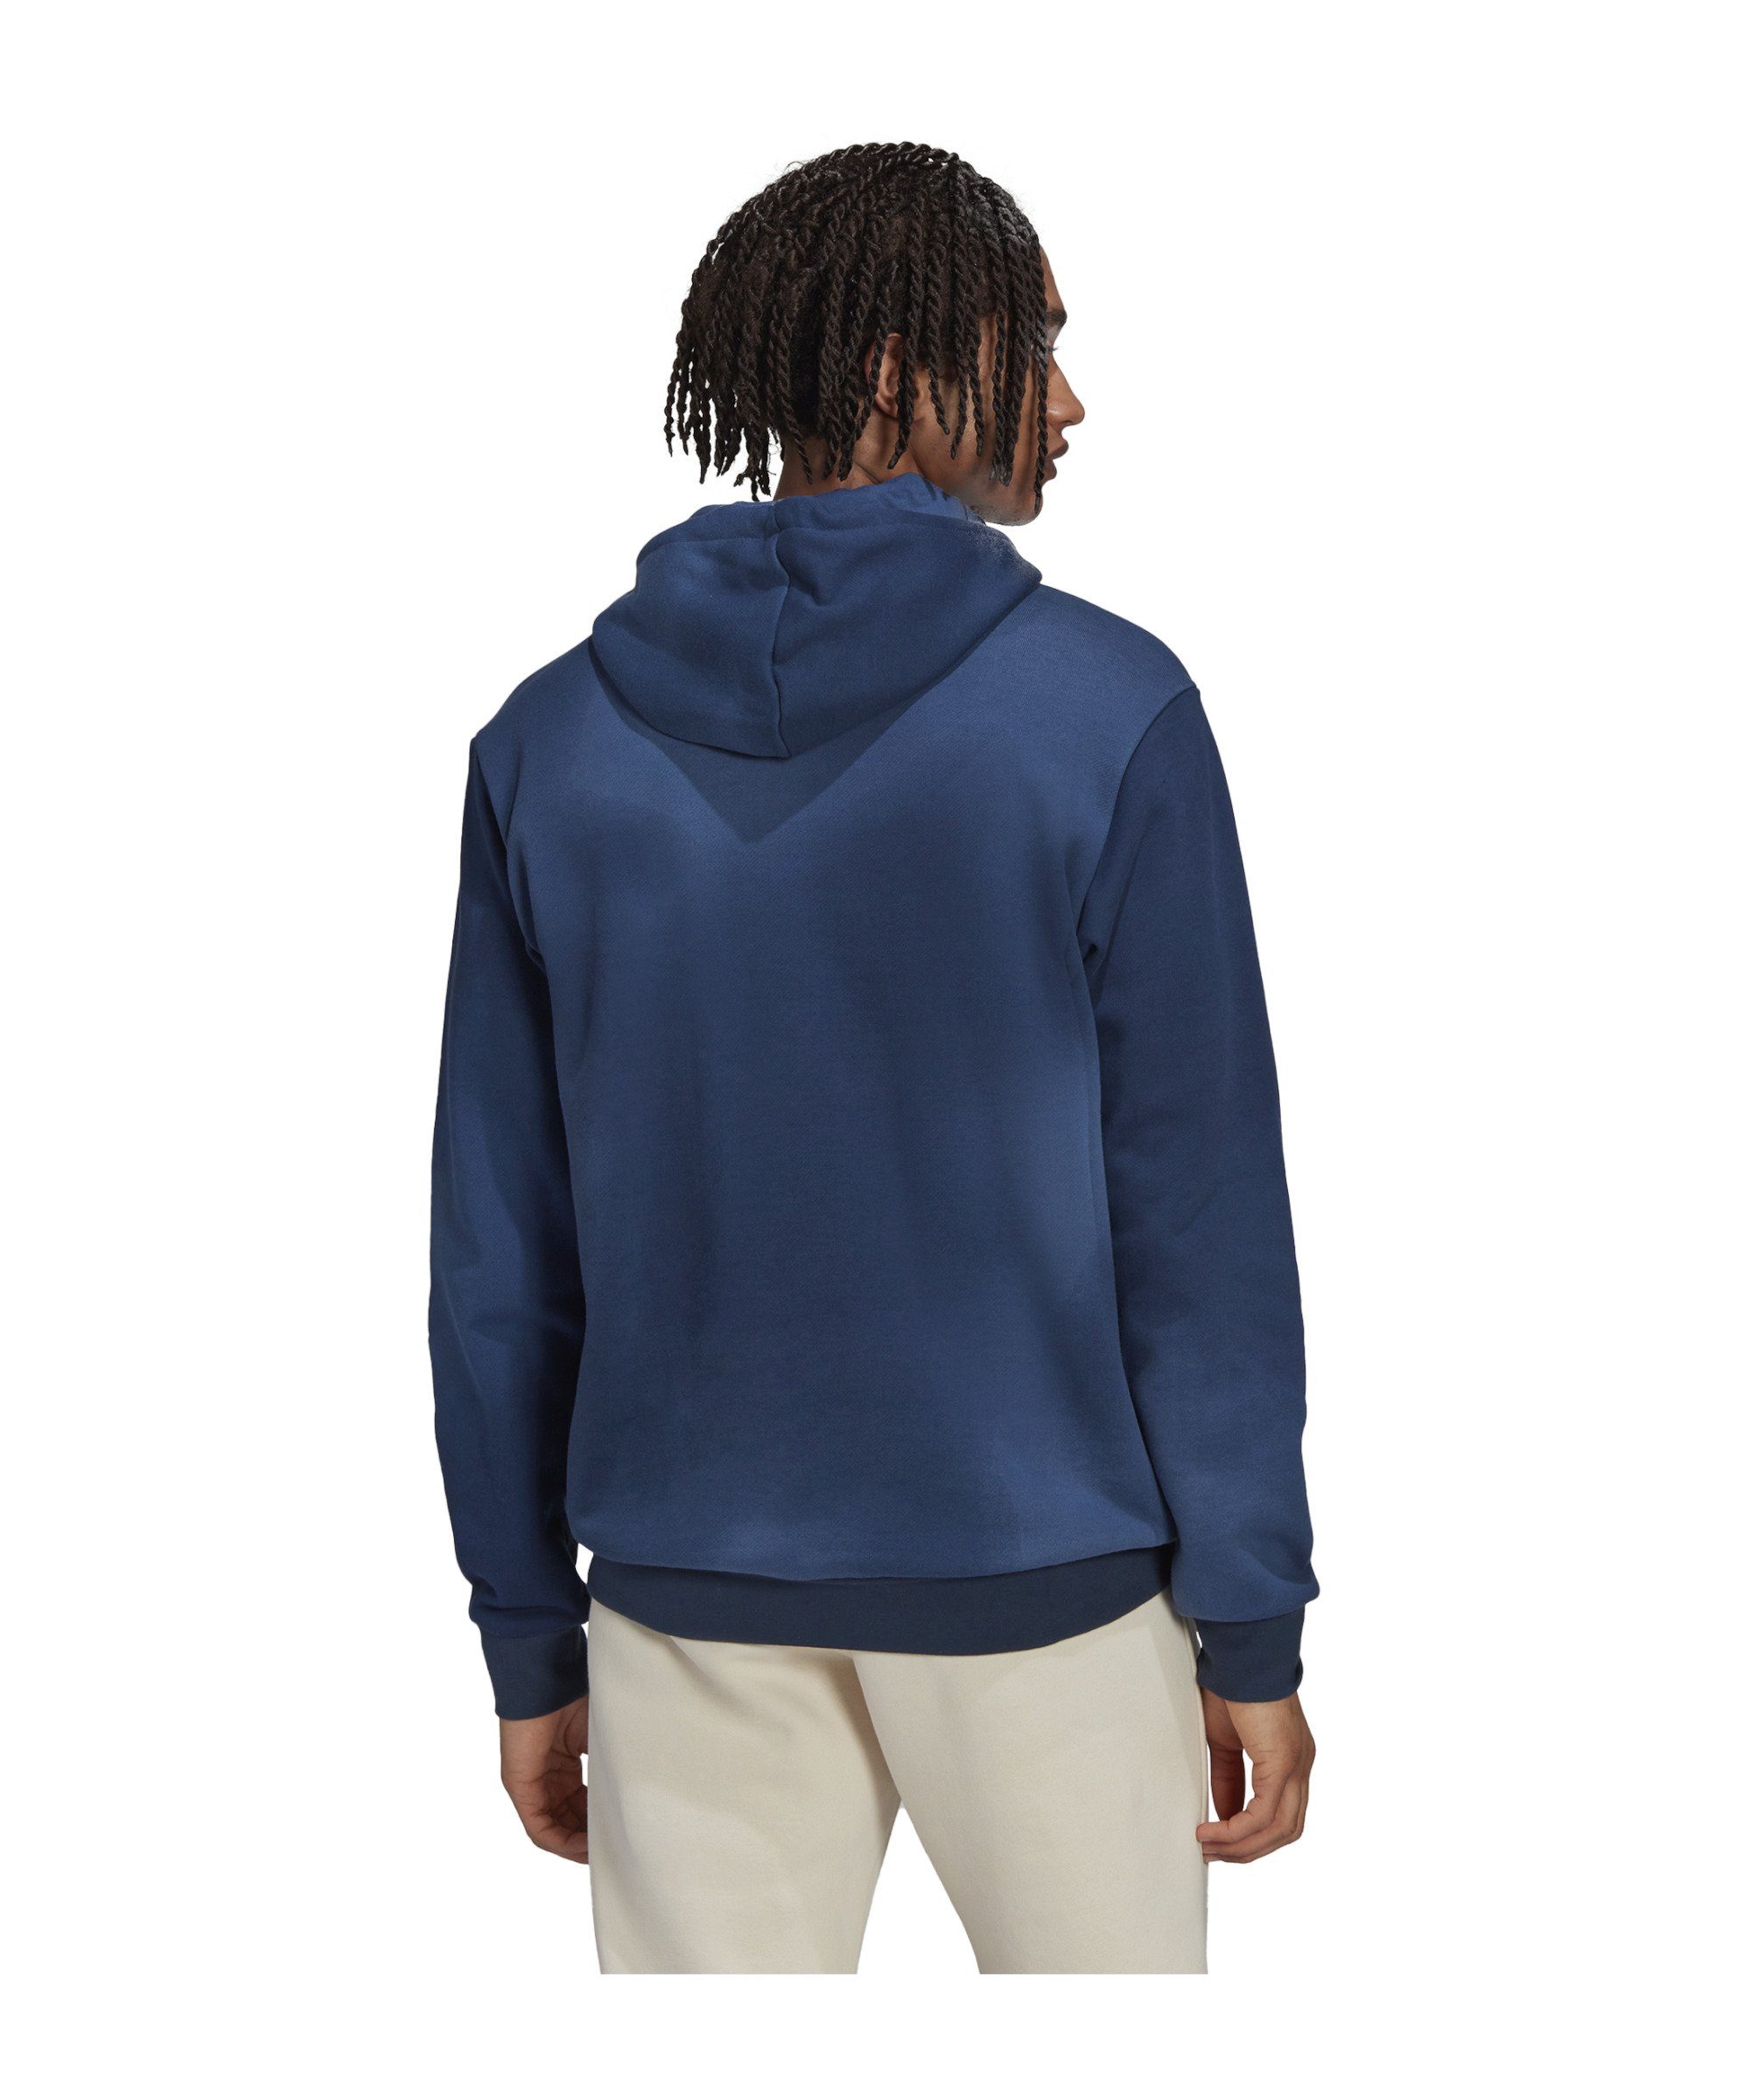 adidas Originals Hoody MRC Sweatshirt